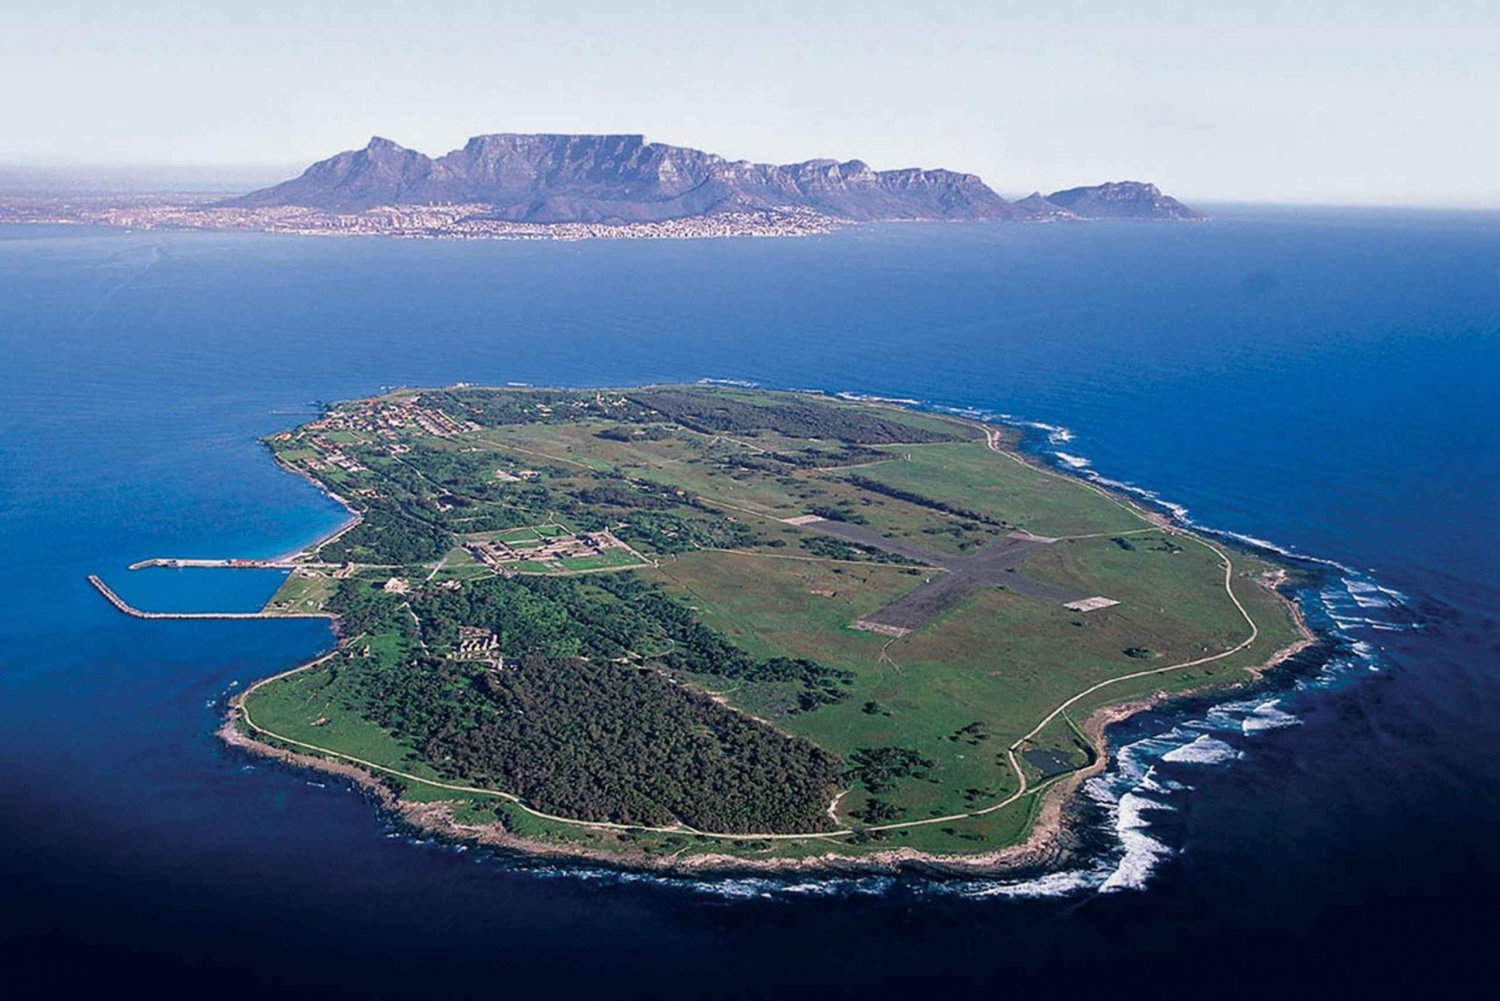 Le Cap : Visite de Robben Island et de la Montagne de la Table